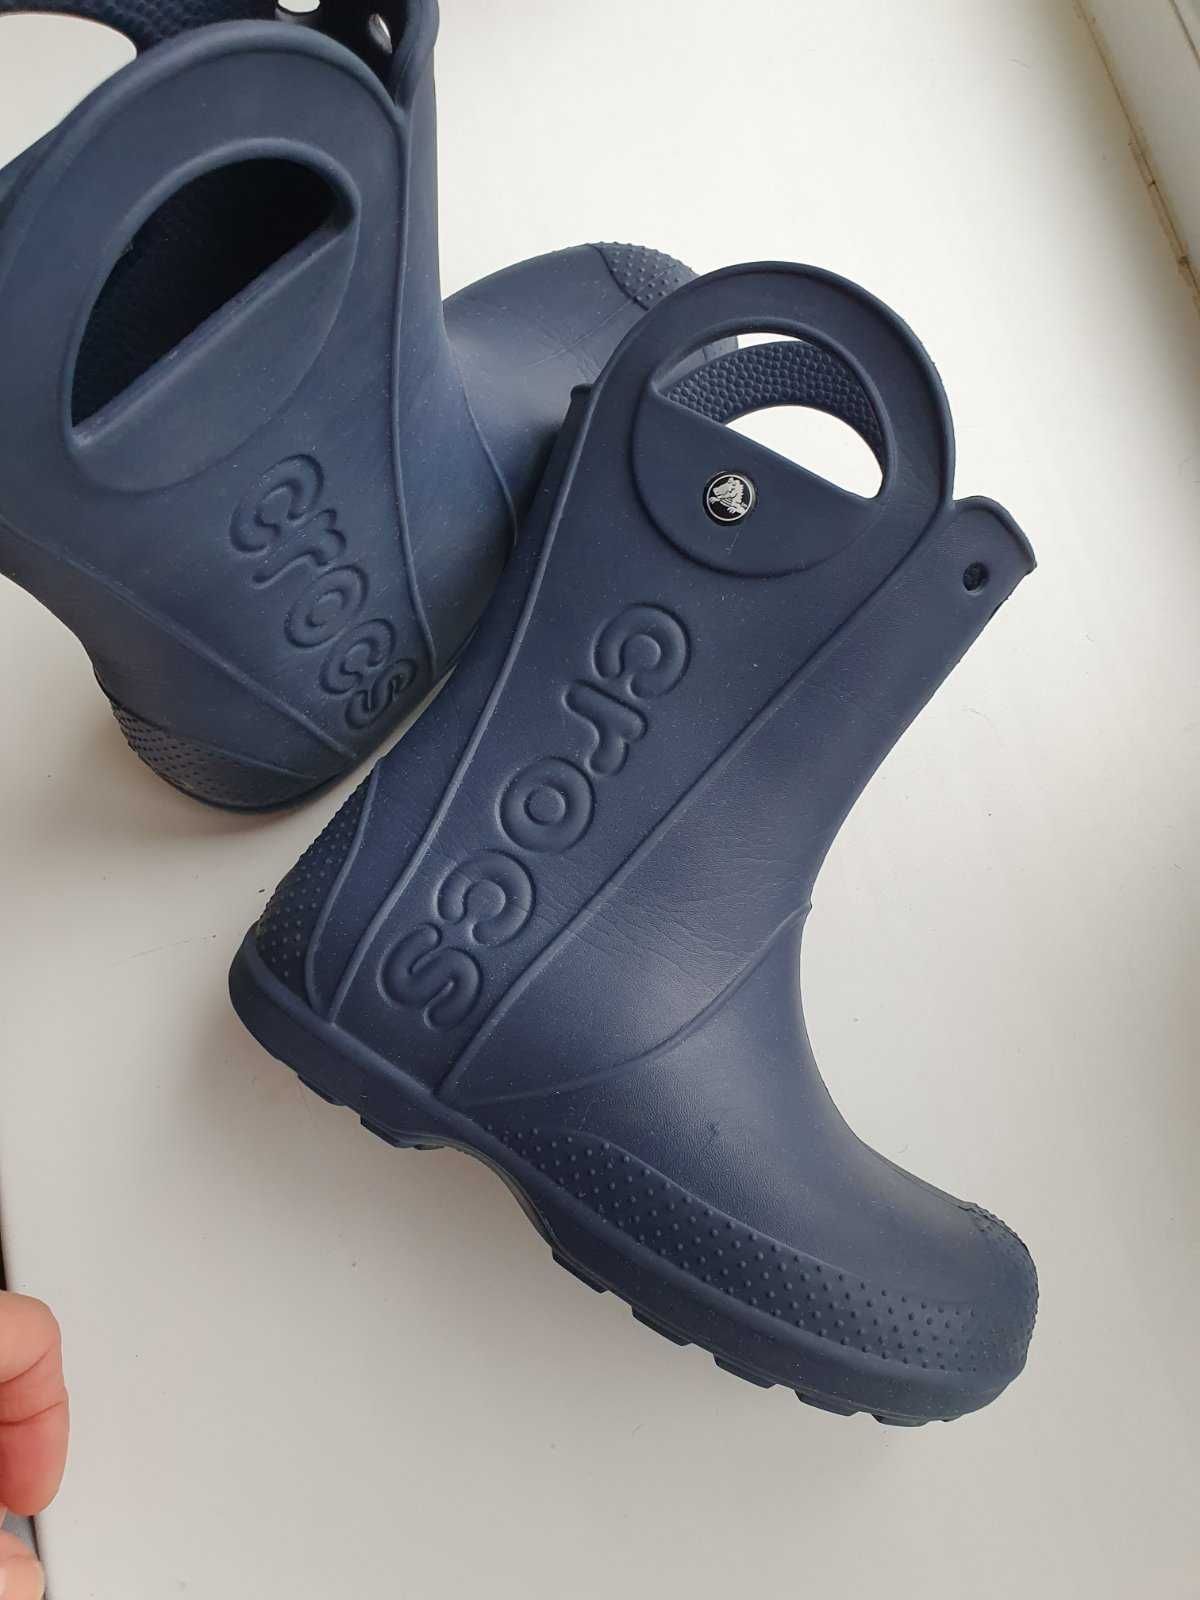 Гумові чоботи дитячі Crocs.J3_ 34-35 розмір (довжина стопи 21,5 см)